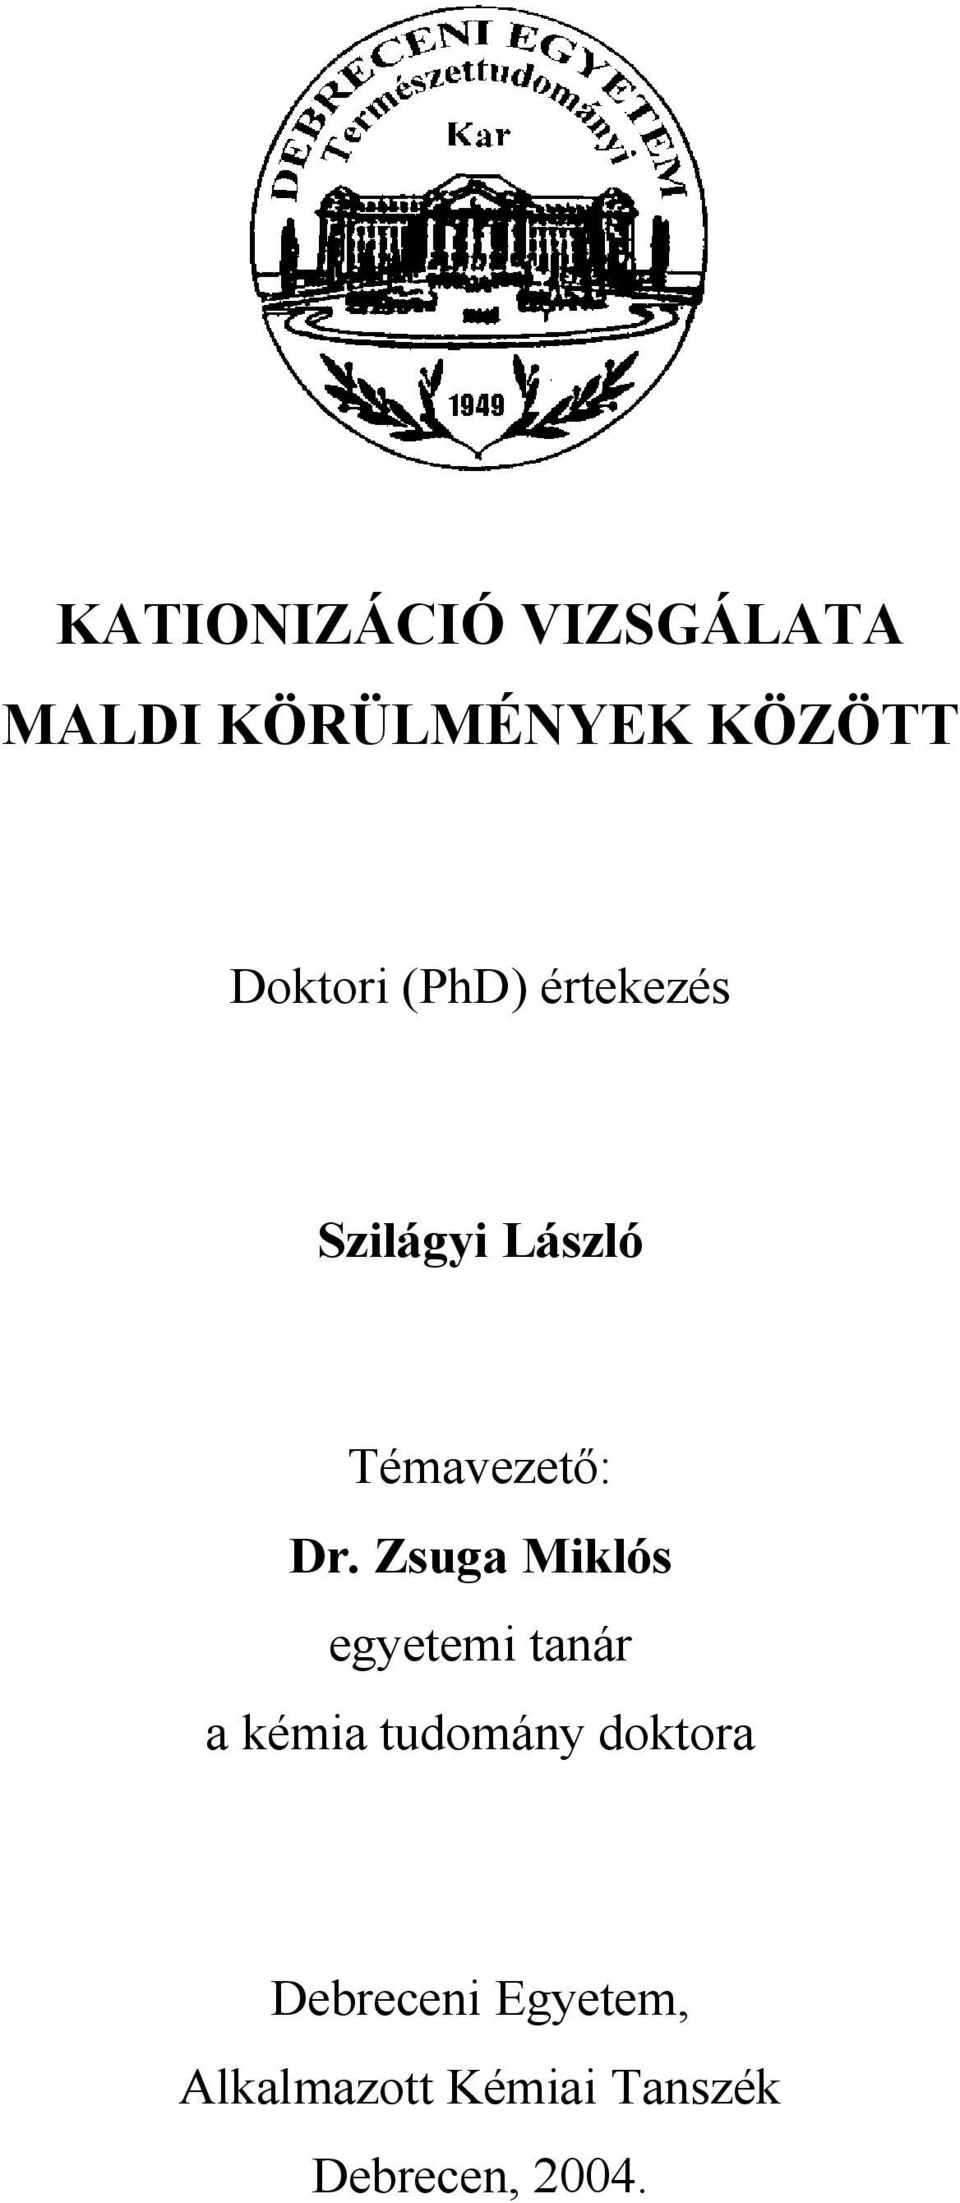 Zsuga Miklós egyetemi tanár a kémia tudomány doktora